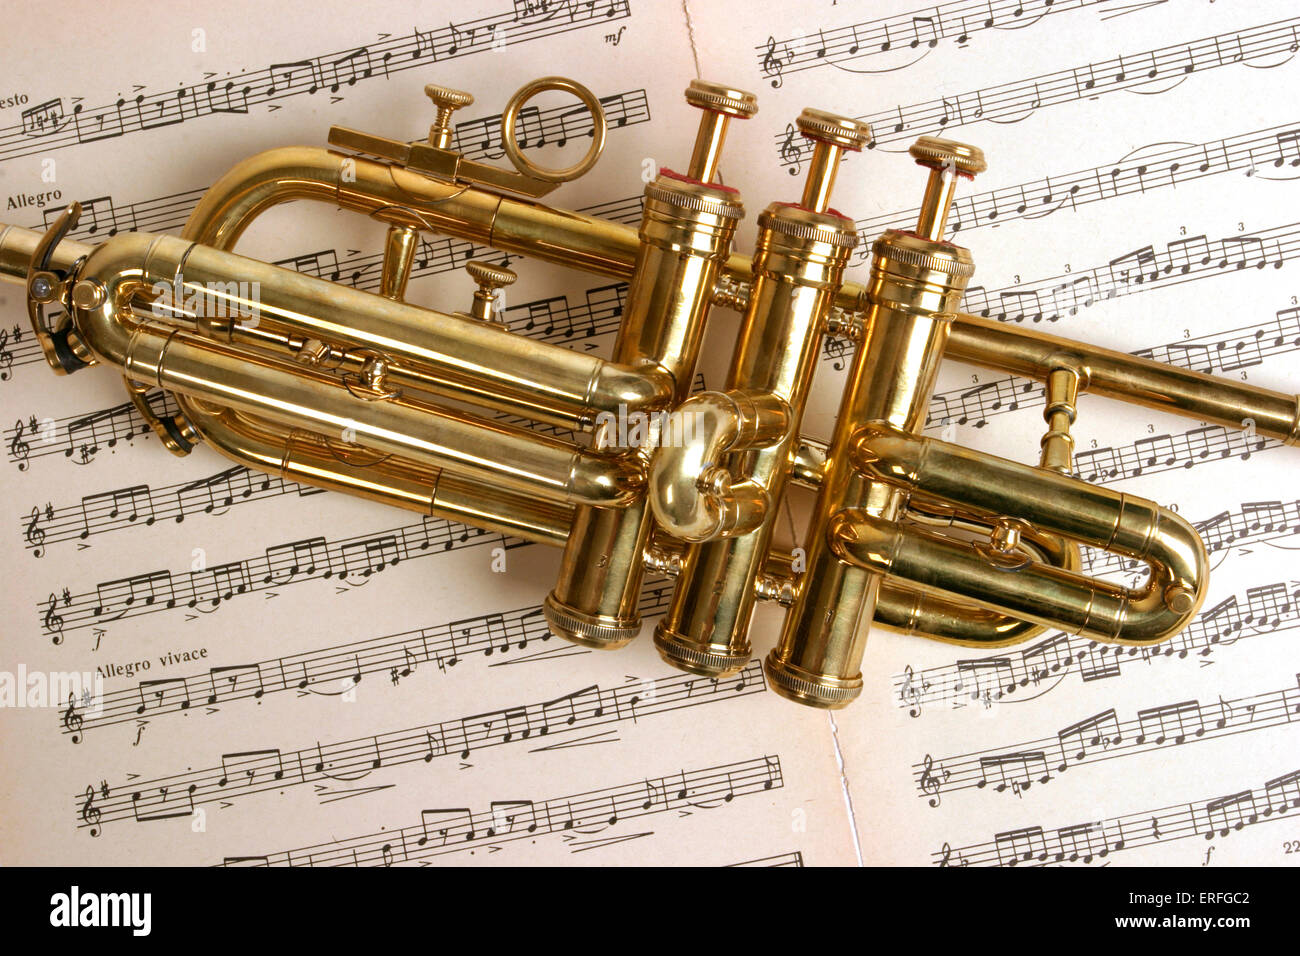 Fanfare trompette, trompette ou rituelles, close-up, dans le corps  principal de l'instrument, reposant sur des partitions de musique.  Également connu sous le nom de Aida Photo Stock - Alamy